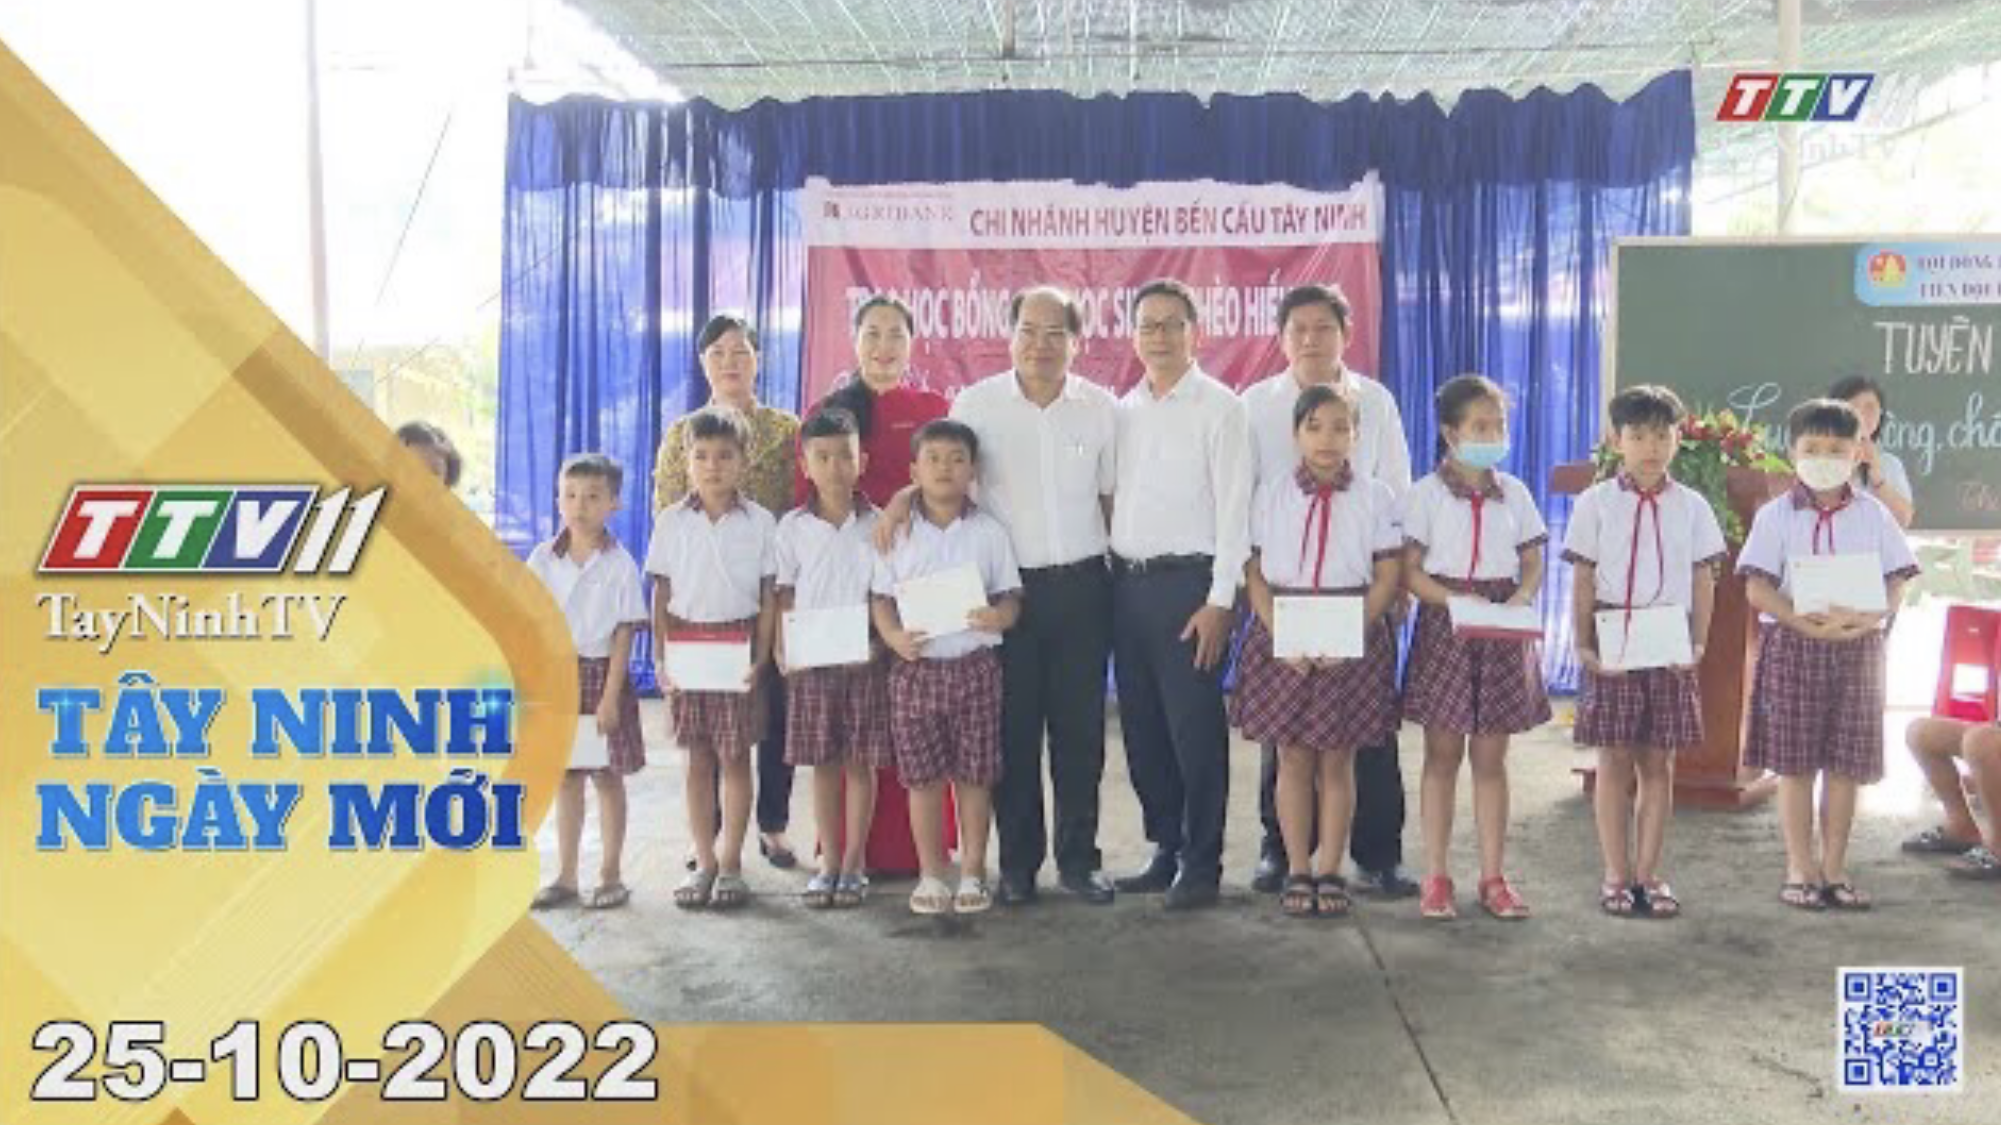 Tây Ninh ngày mới 25-10-2022 | Tin tức hôm nay | TayNinhTV